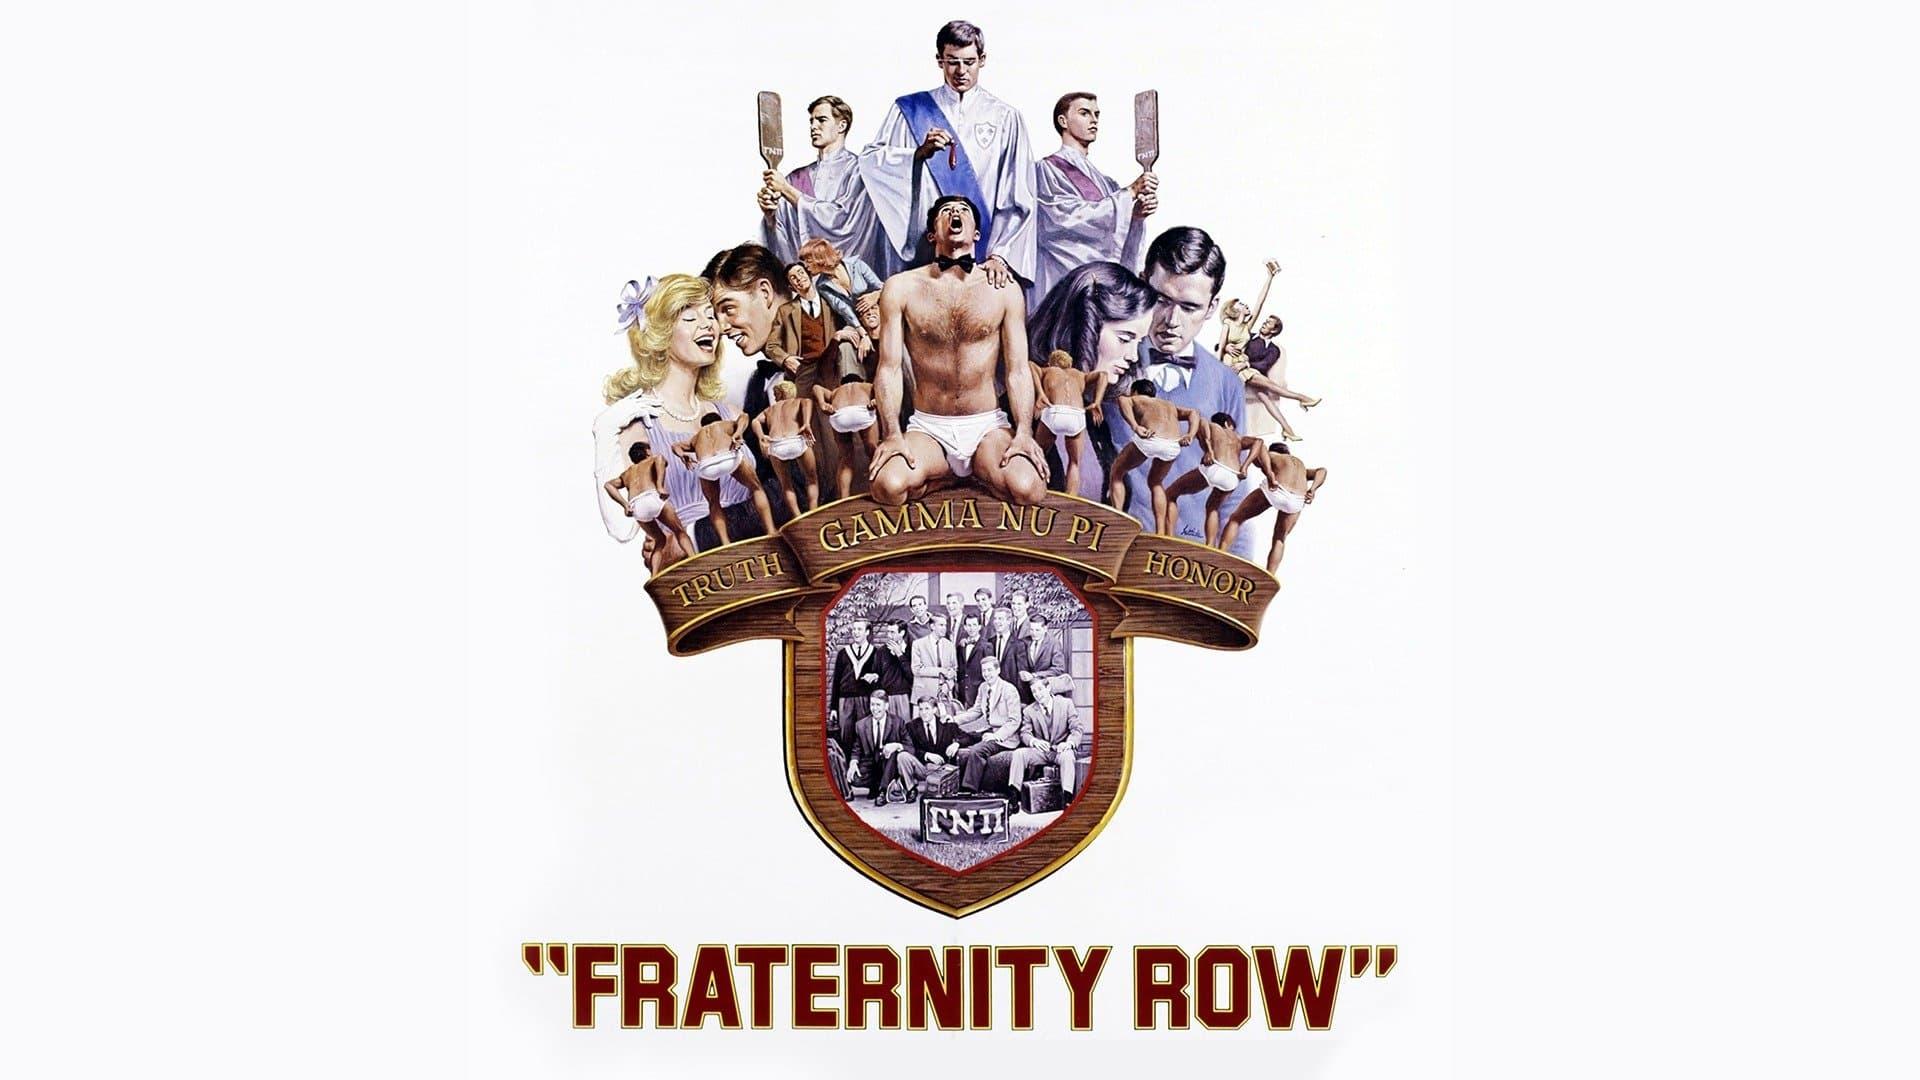 Fraternity Row backdrop